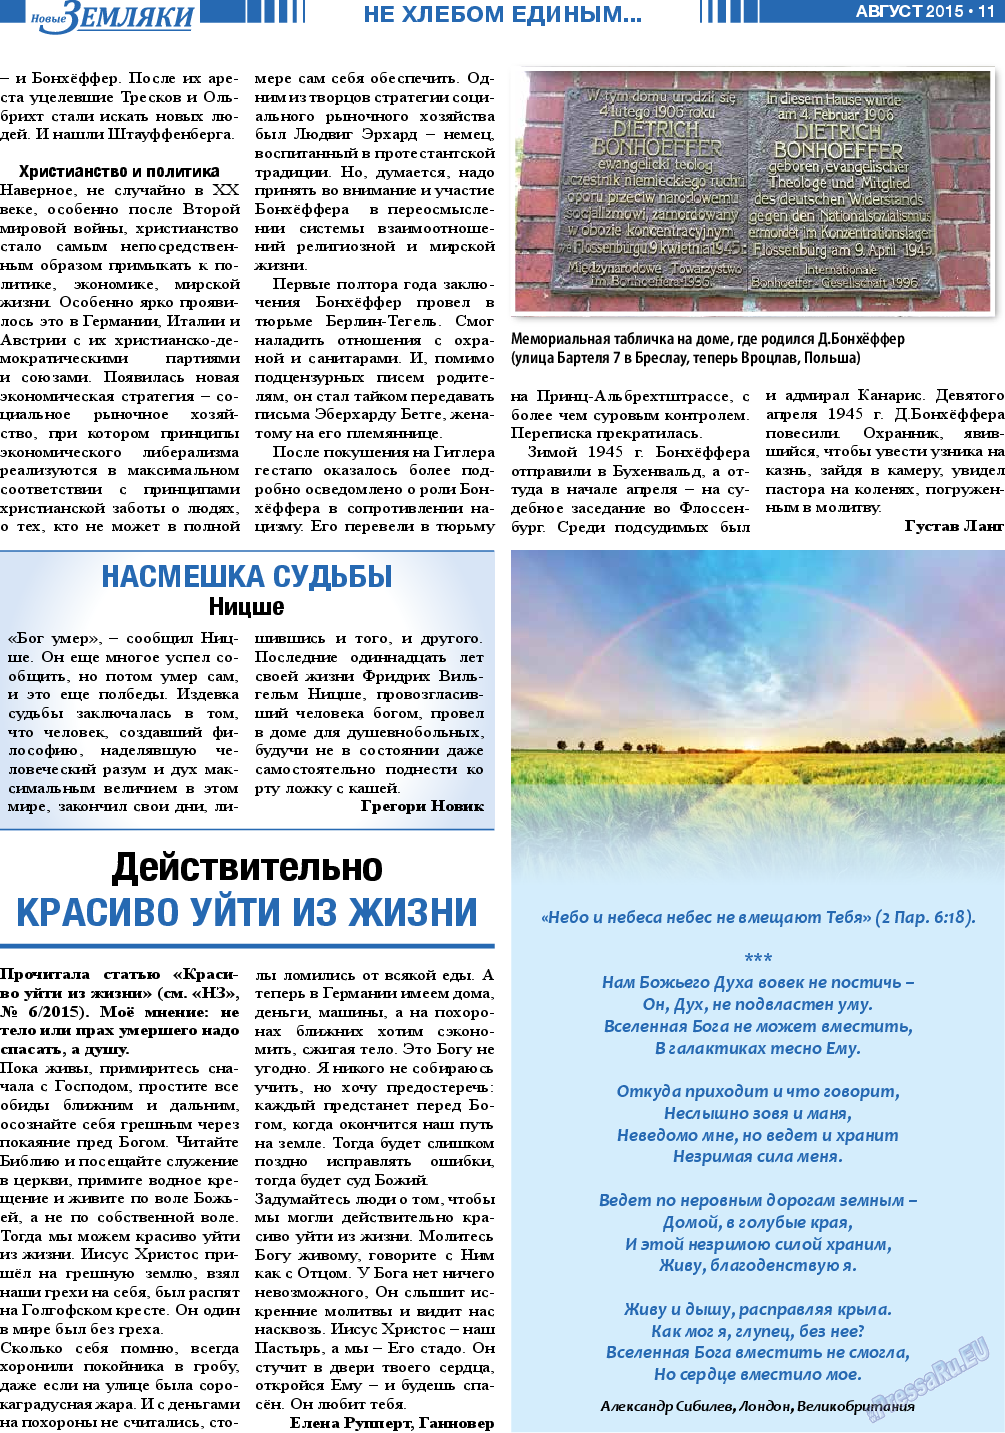 Новые Земляки, газета. 2015 №8 стр.11